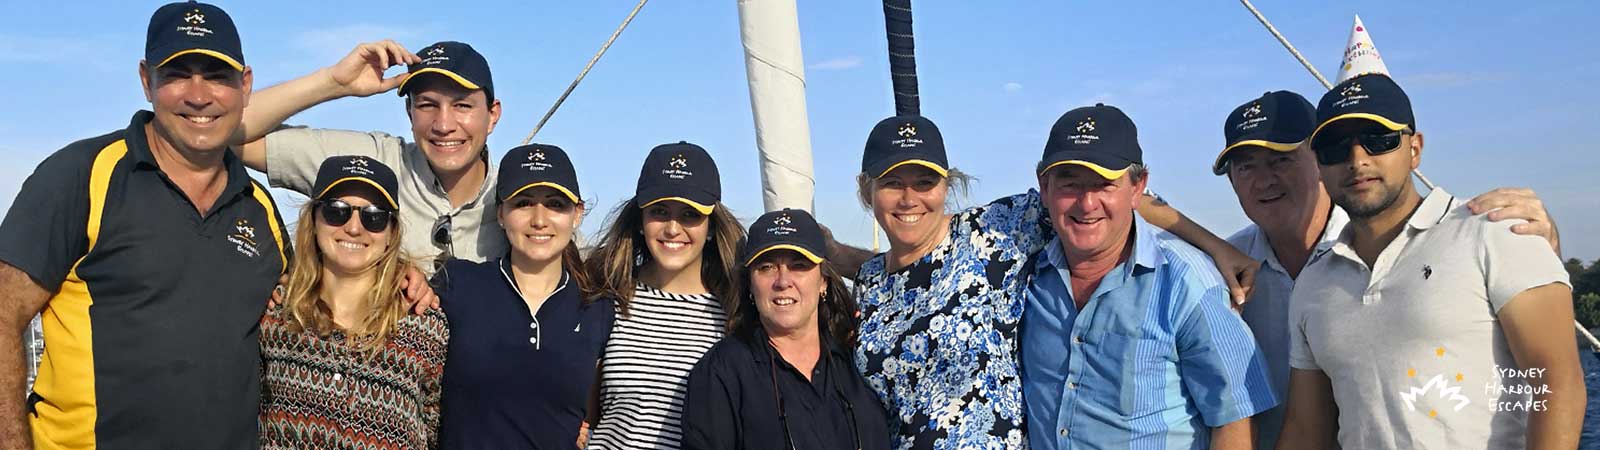 Meet the Sydney Harbour Escapes Team photo